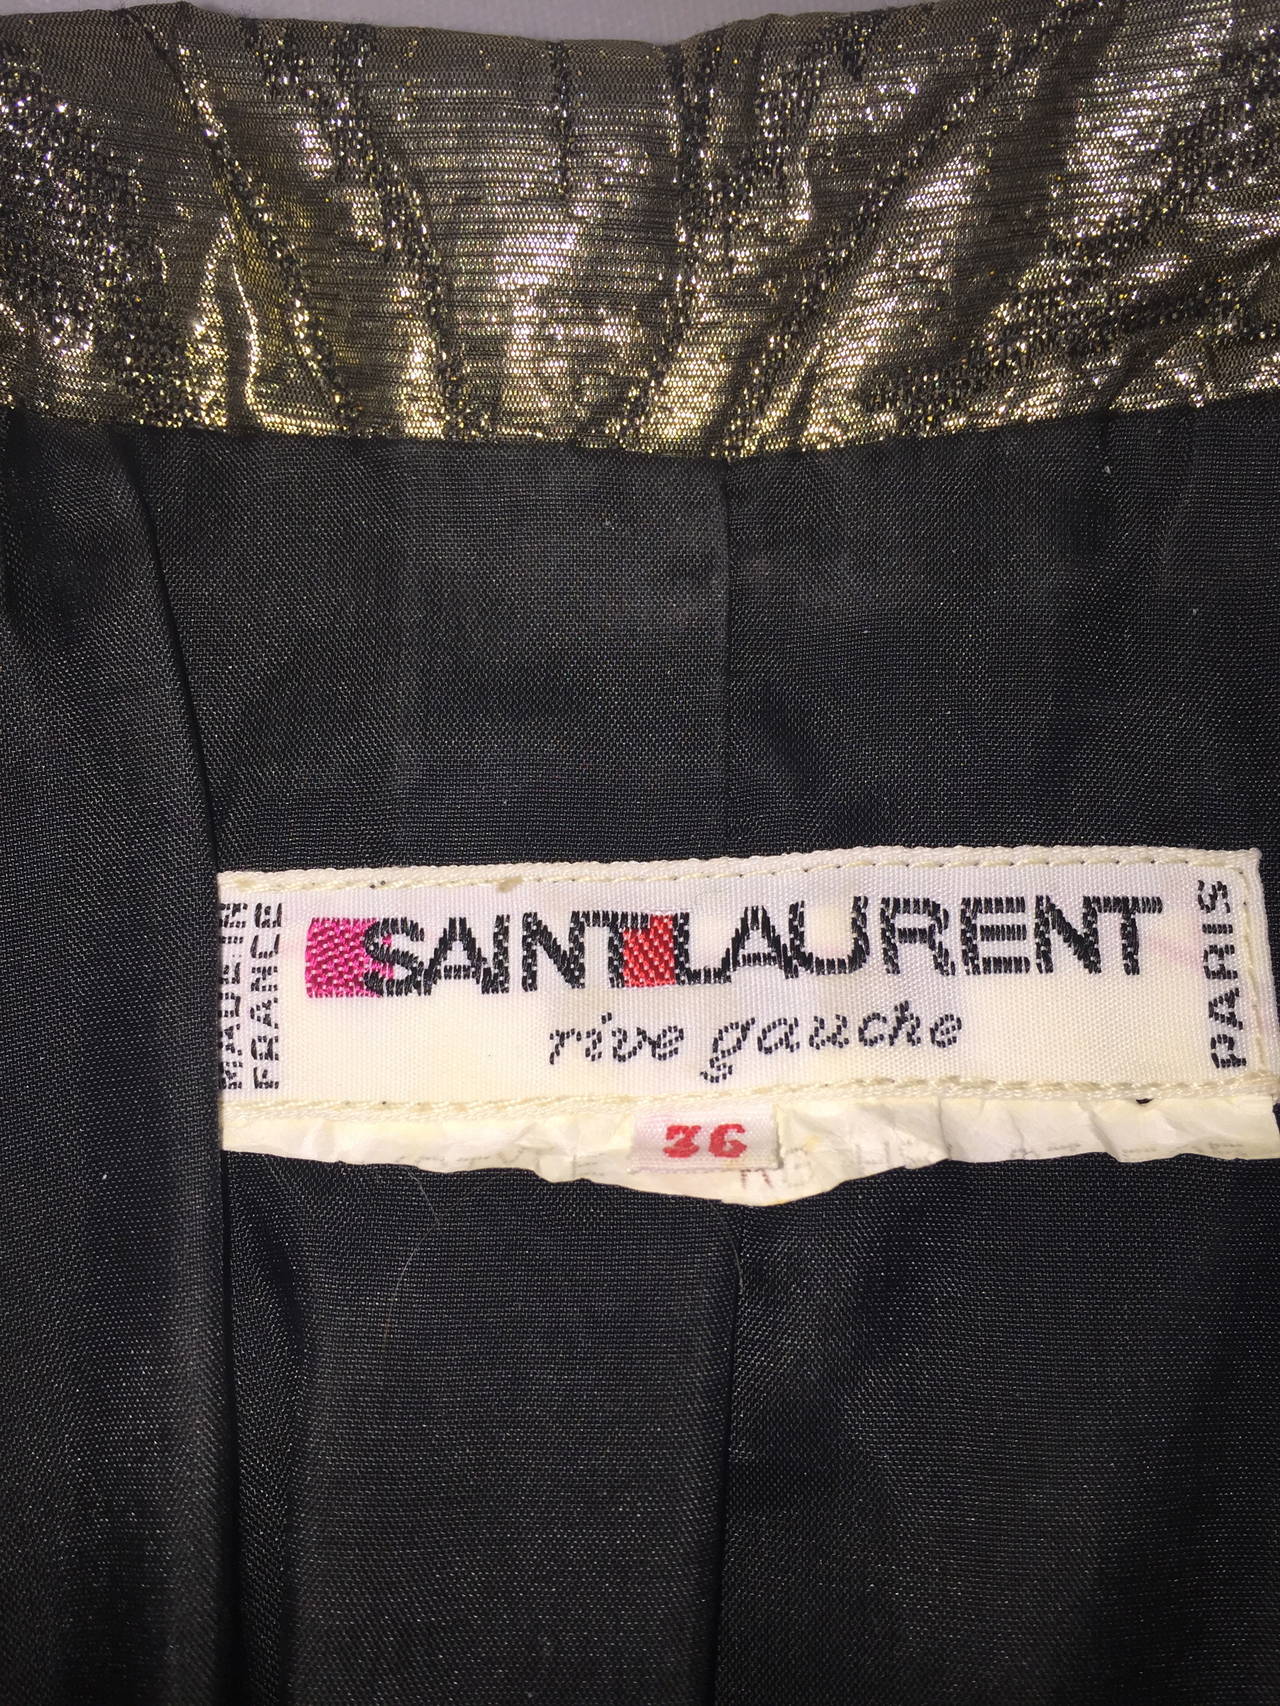 Exceptional Vintage Yves Saint Laurent Evening Coat. 3